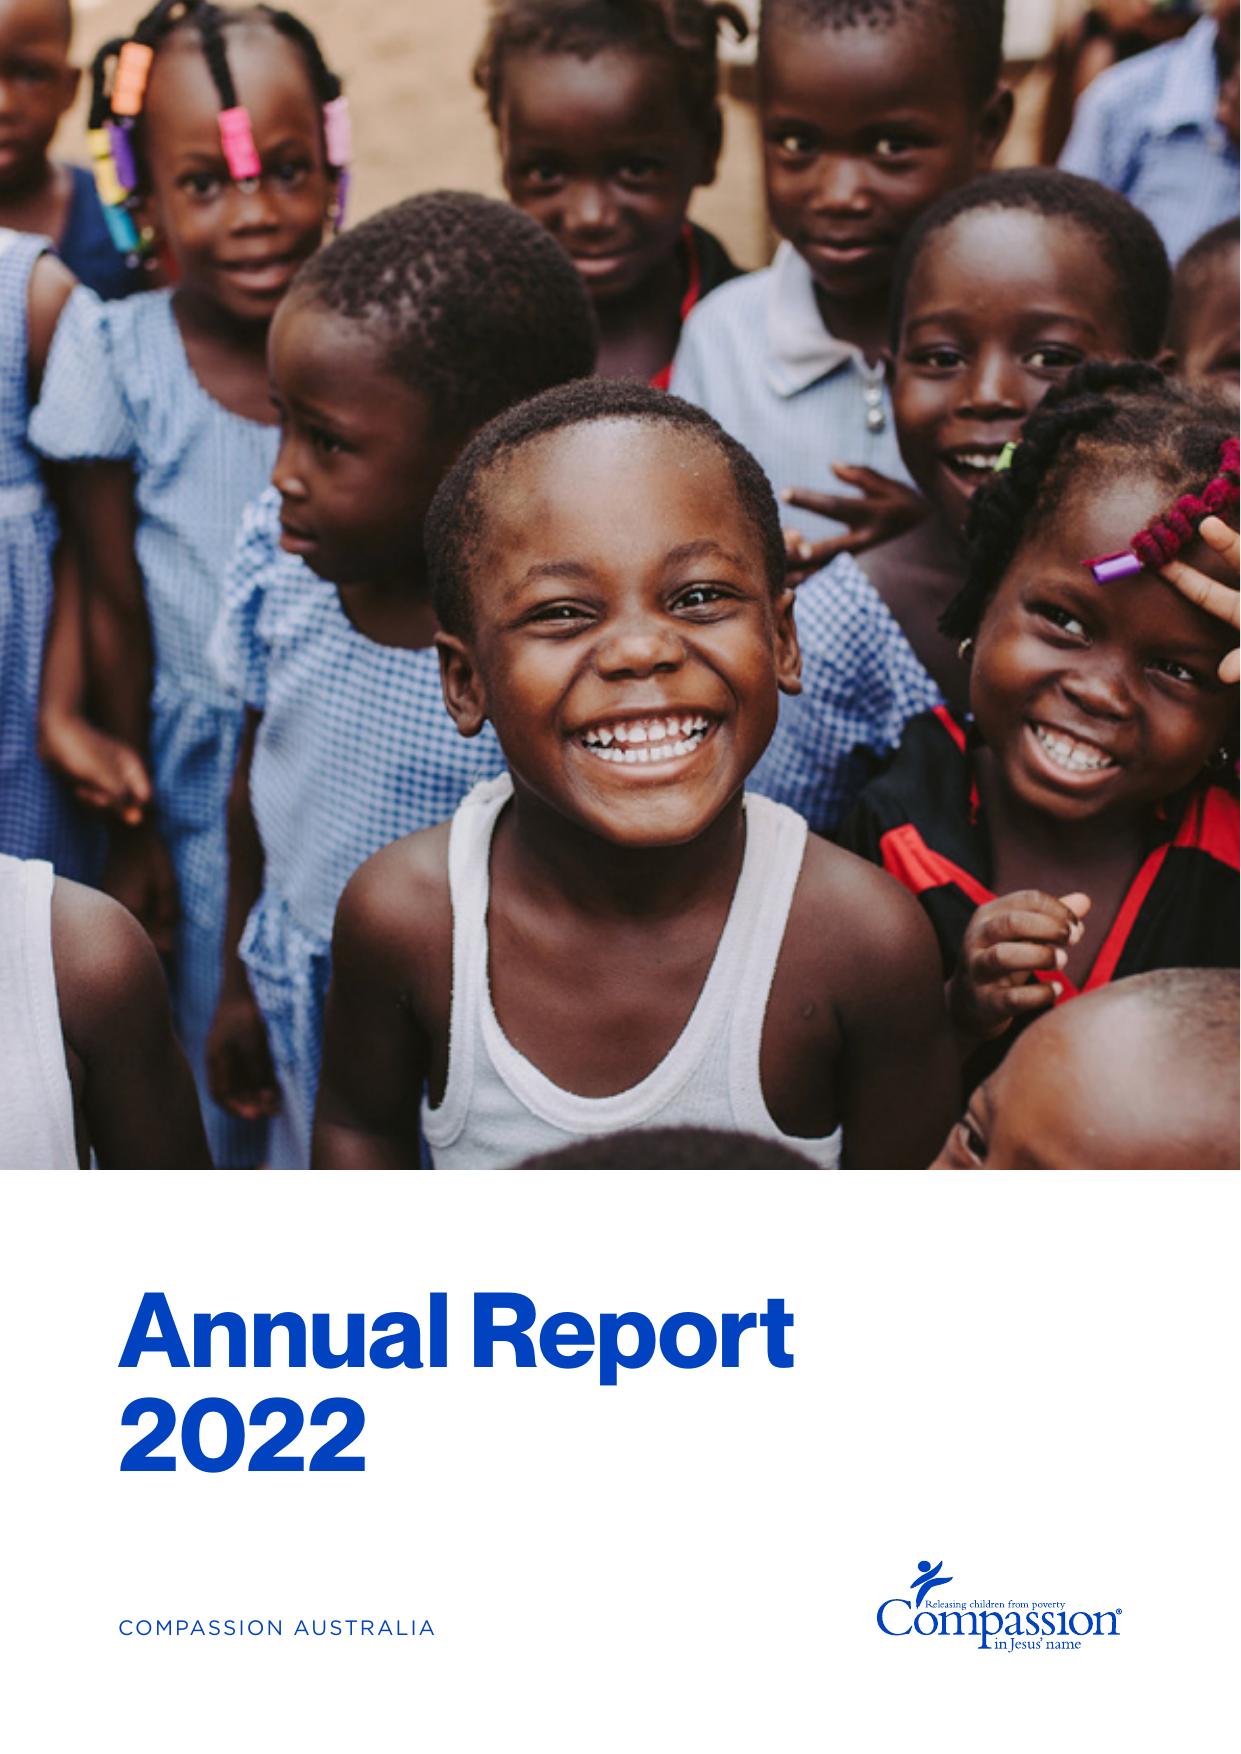 COMPASSION 2022 Annual Report